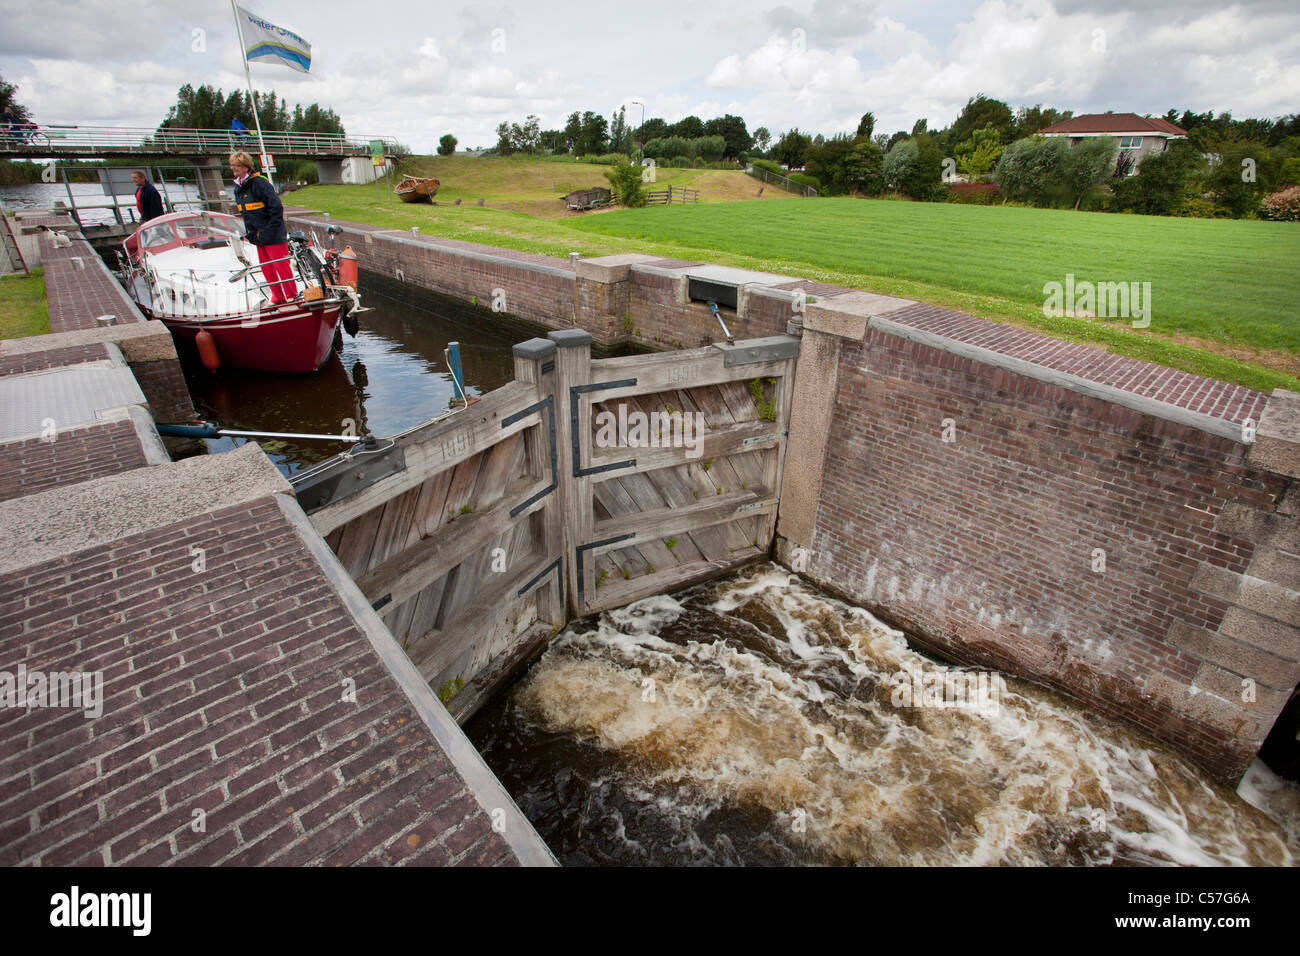 Los Países Bajos, cerca de Bodegraven, río Meije. Yate de placer esperando en la cerradura. Foto de stock